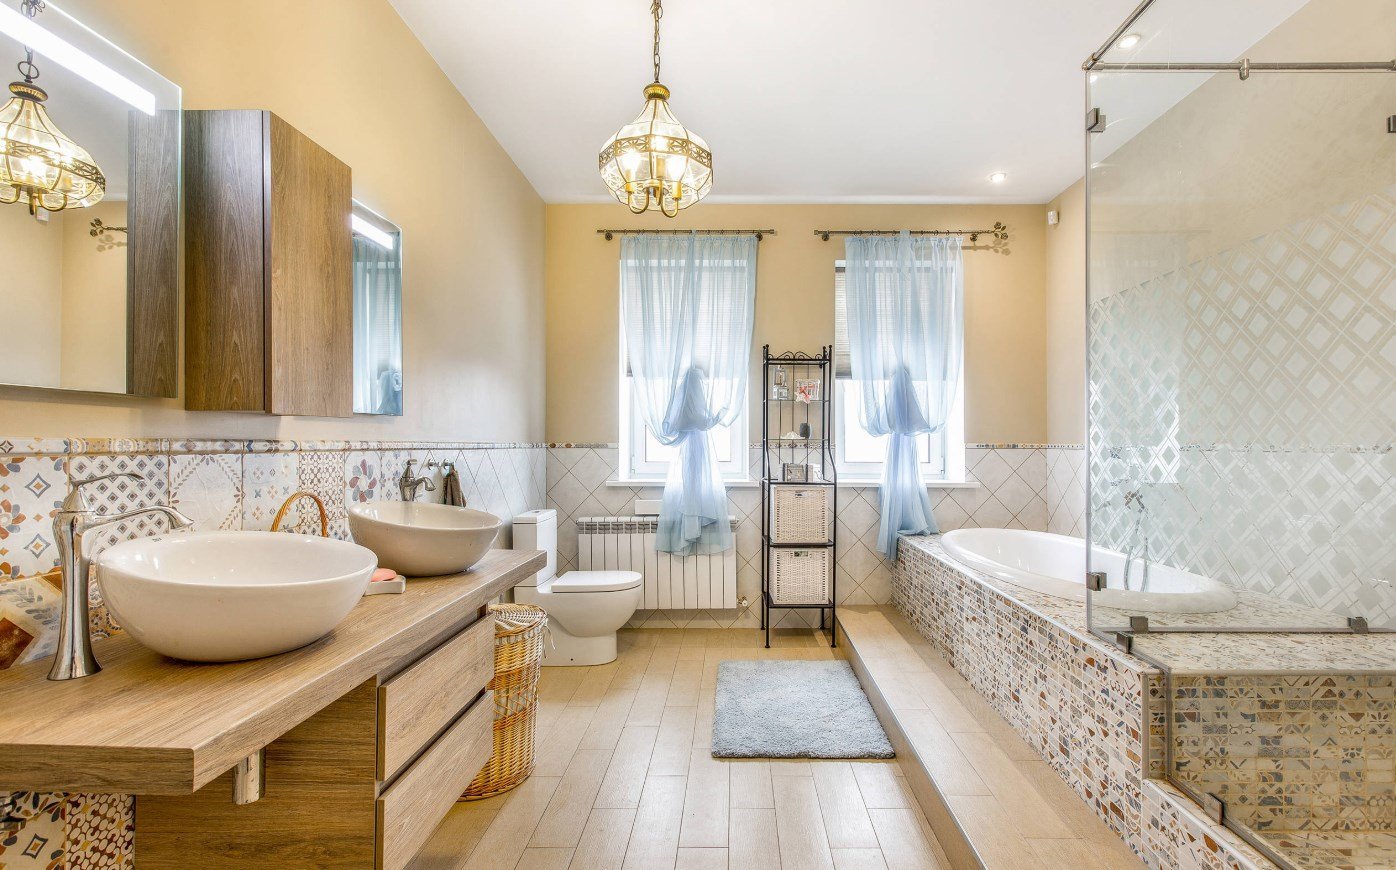 Ванная комната 2022 дизайн: актуальные решения этого года, выбор мебели и декора современной ванной